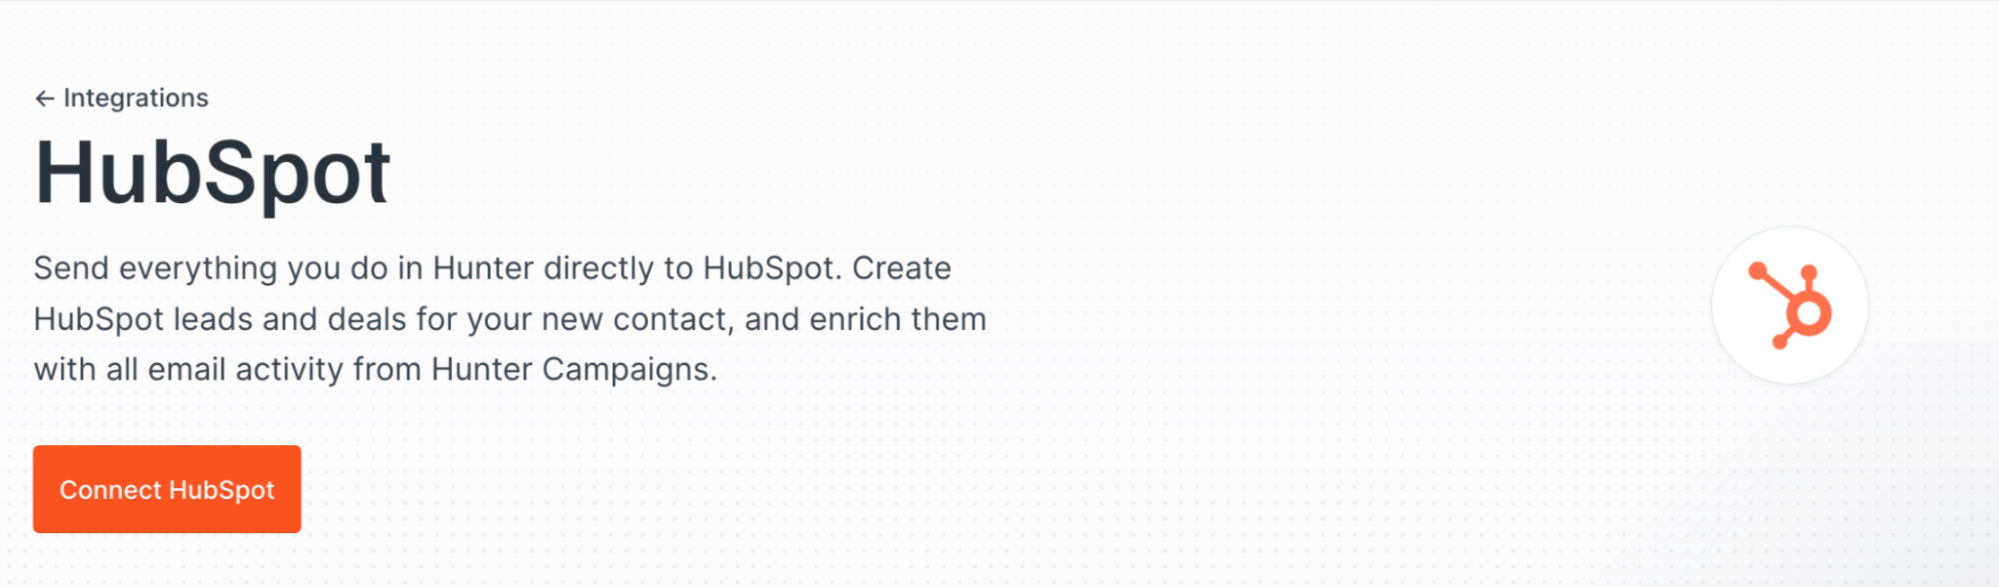 HubSpot integration in Hunter's Integrations page